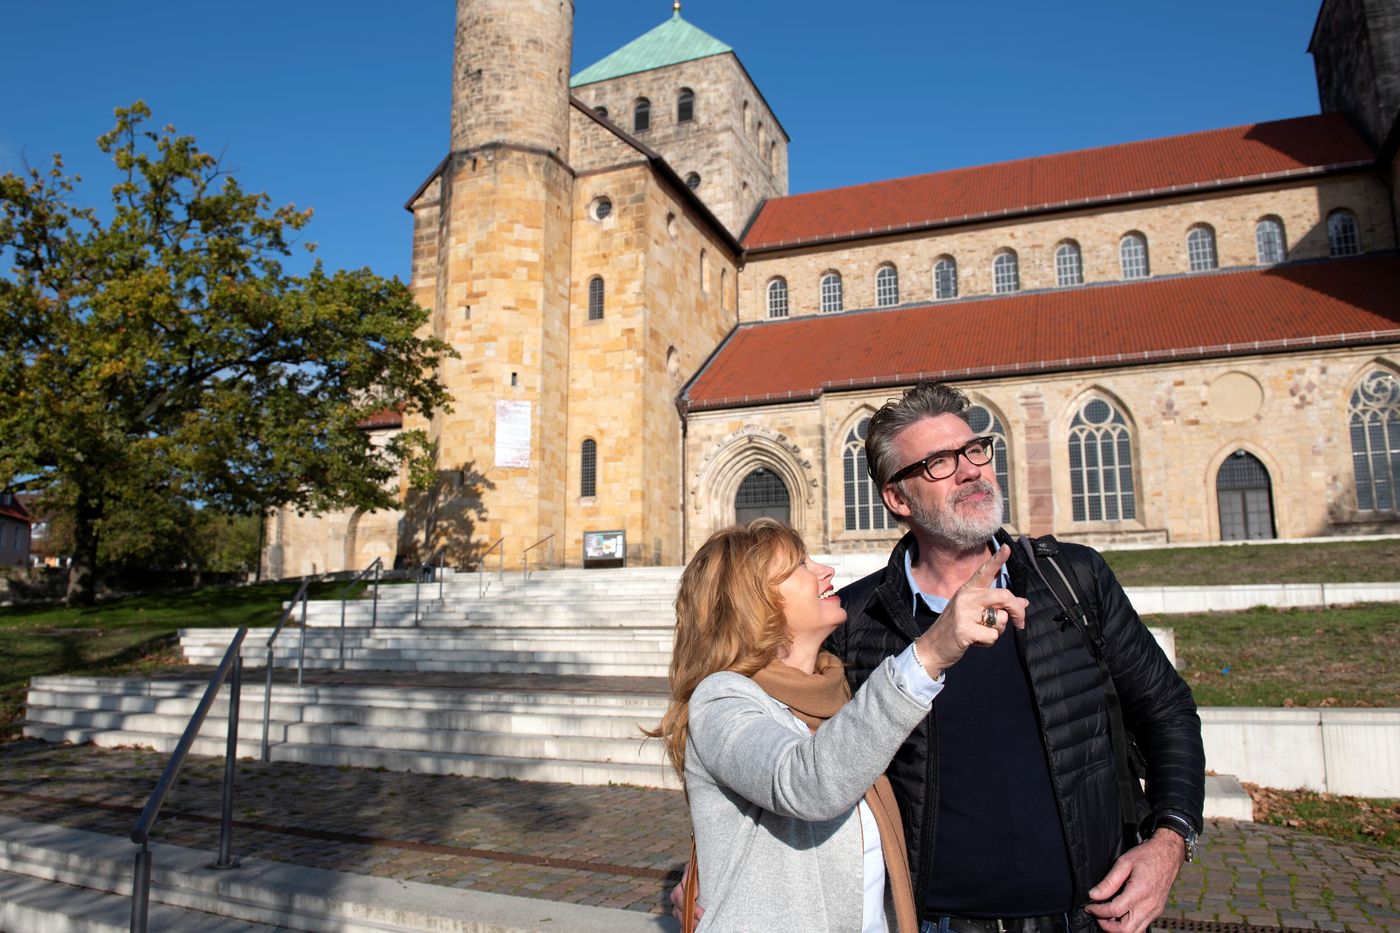 Frühmittelalterliches Kirchenjuwel in Norddeutschland